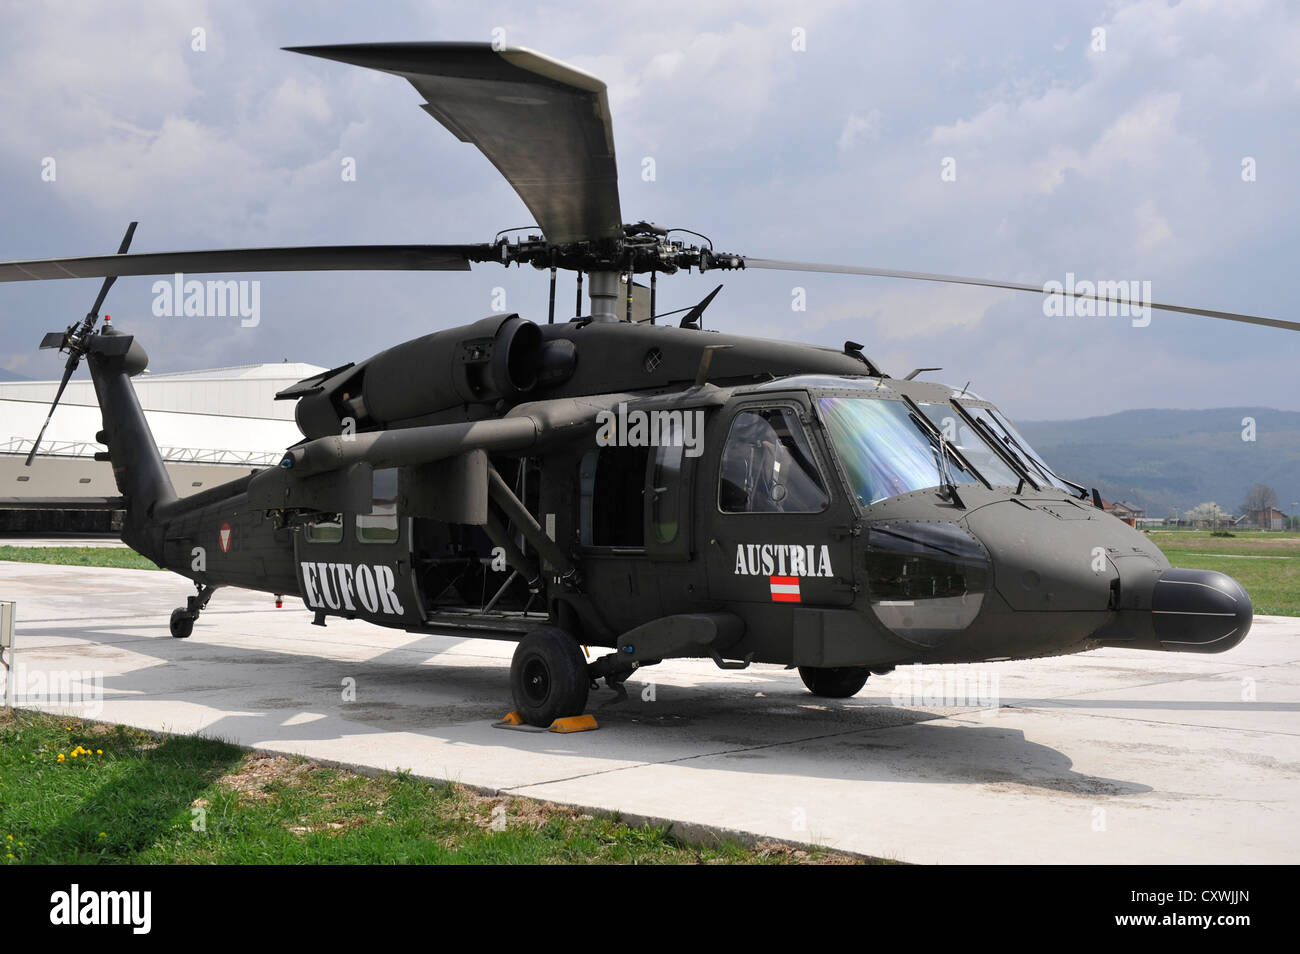 Ein Sikorsky UH-60 Blackhawk Hubschrauber in NATO/EUFOR Camp Butmir in  Sarajevo, Bosnien und Herzegowina Stockfotografie - Alamy